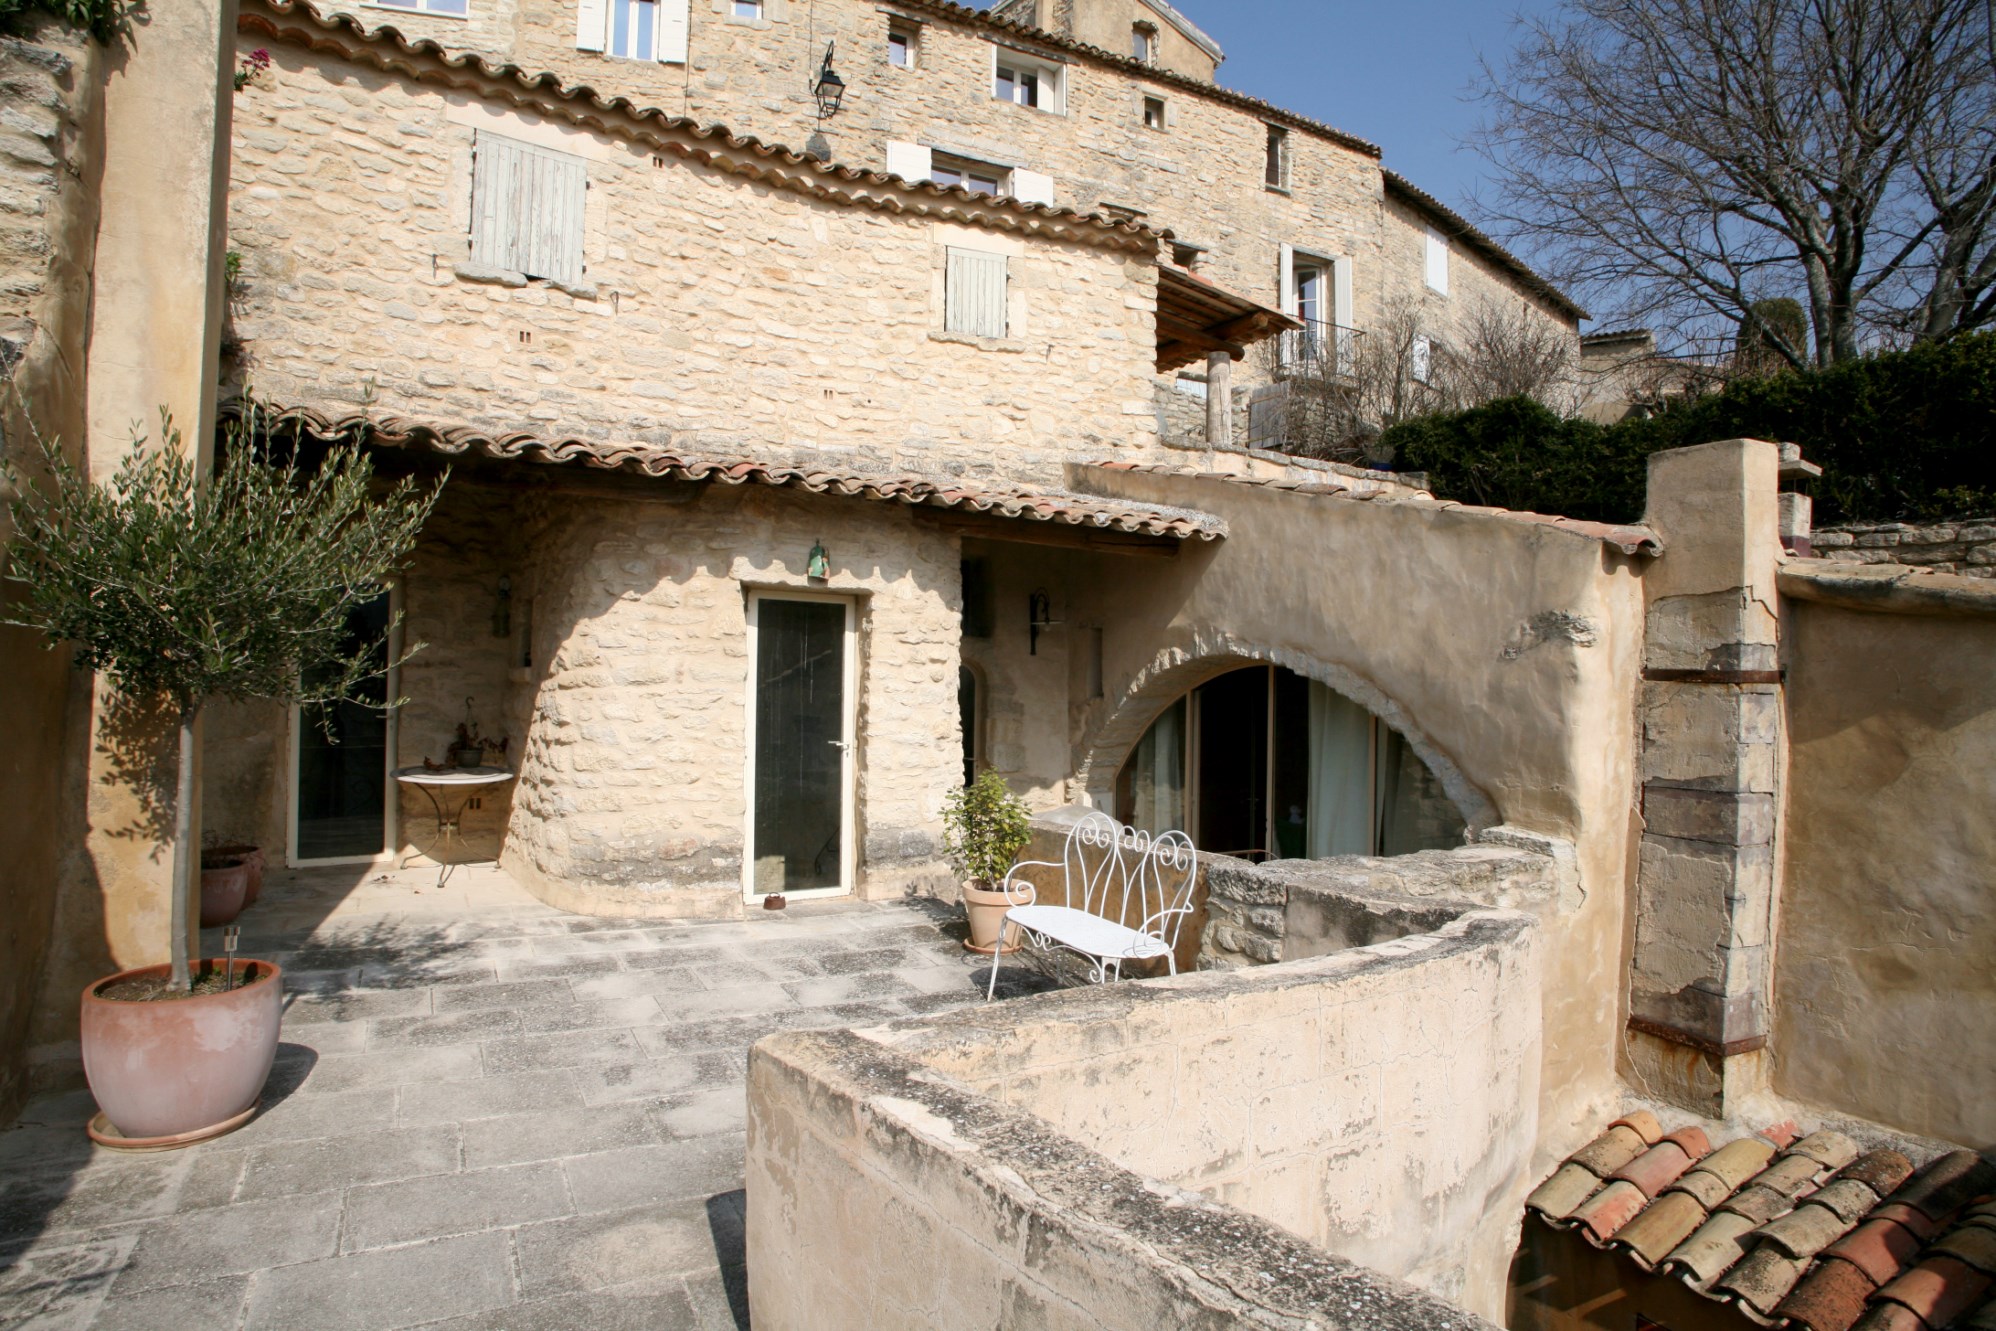 Vente En vente en Provence, en Luberon,  dans un célèbre village perché, magnifique maison de village du XVIIème siècle totalement atypique,  avec patio et terrasse.